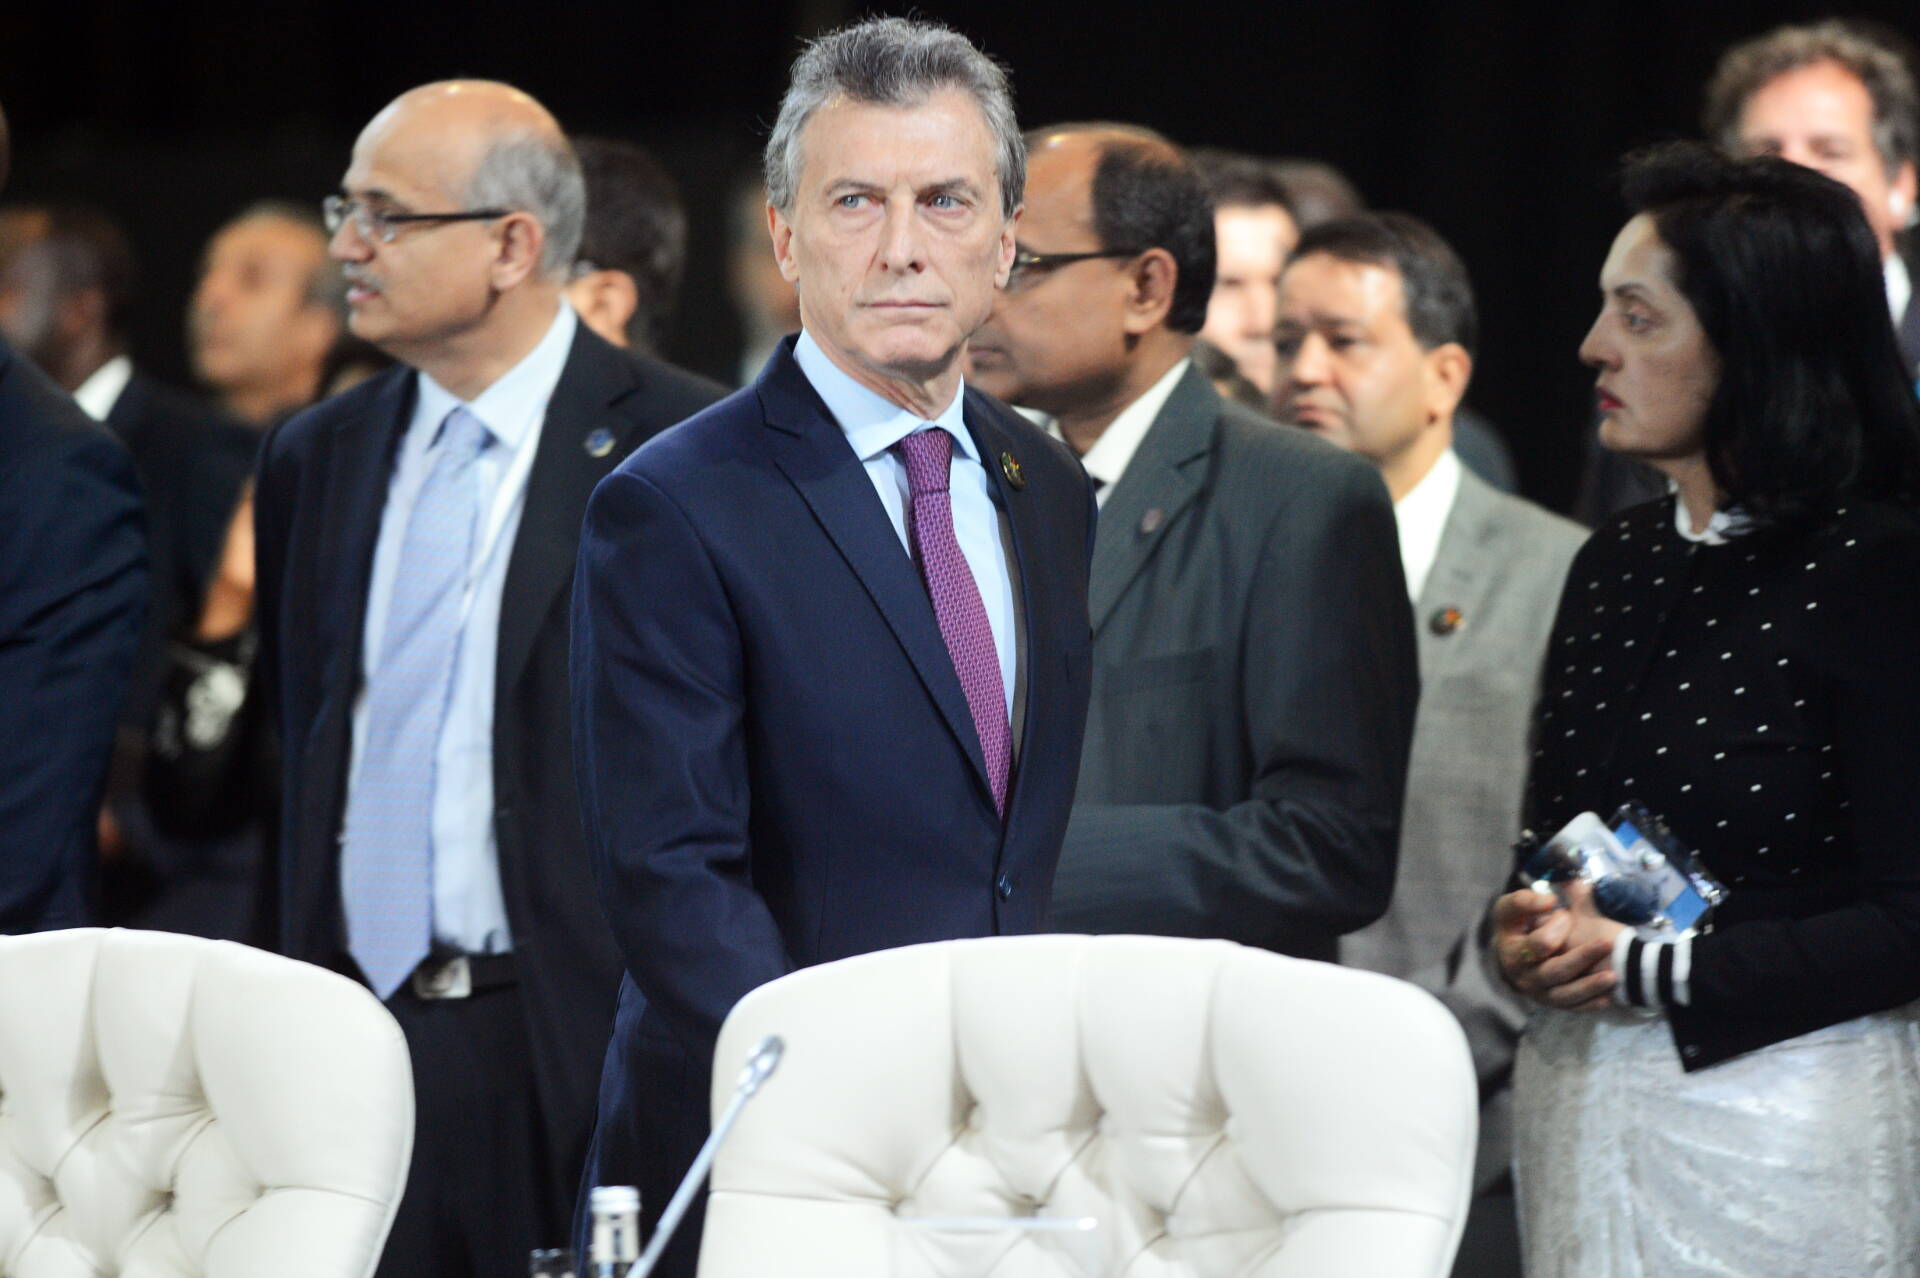 El presidente Macri participó en la décima cumbre del BRICS